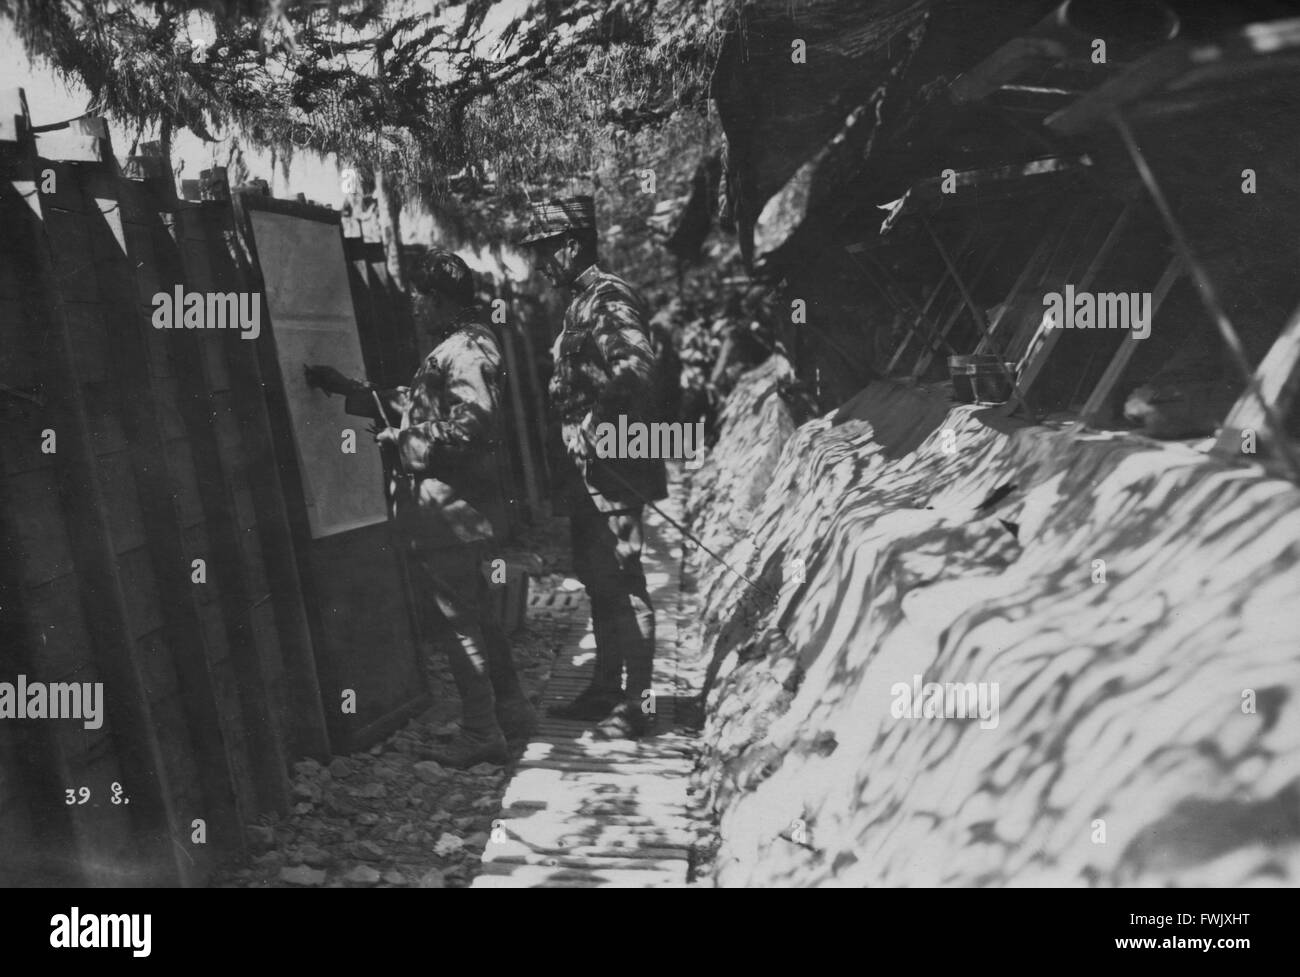 Le commandant de brigade français l'examen de cartes dans les tranchées près de Recicourt France sur le front occidental pendant la PREMIÈRE GUERRE MONDIALE, vers 1916/1917. Banque D'Images